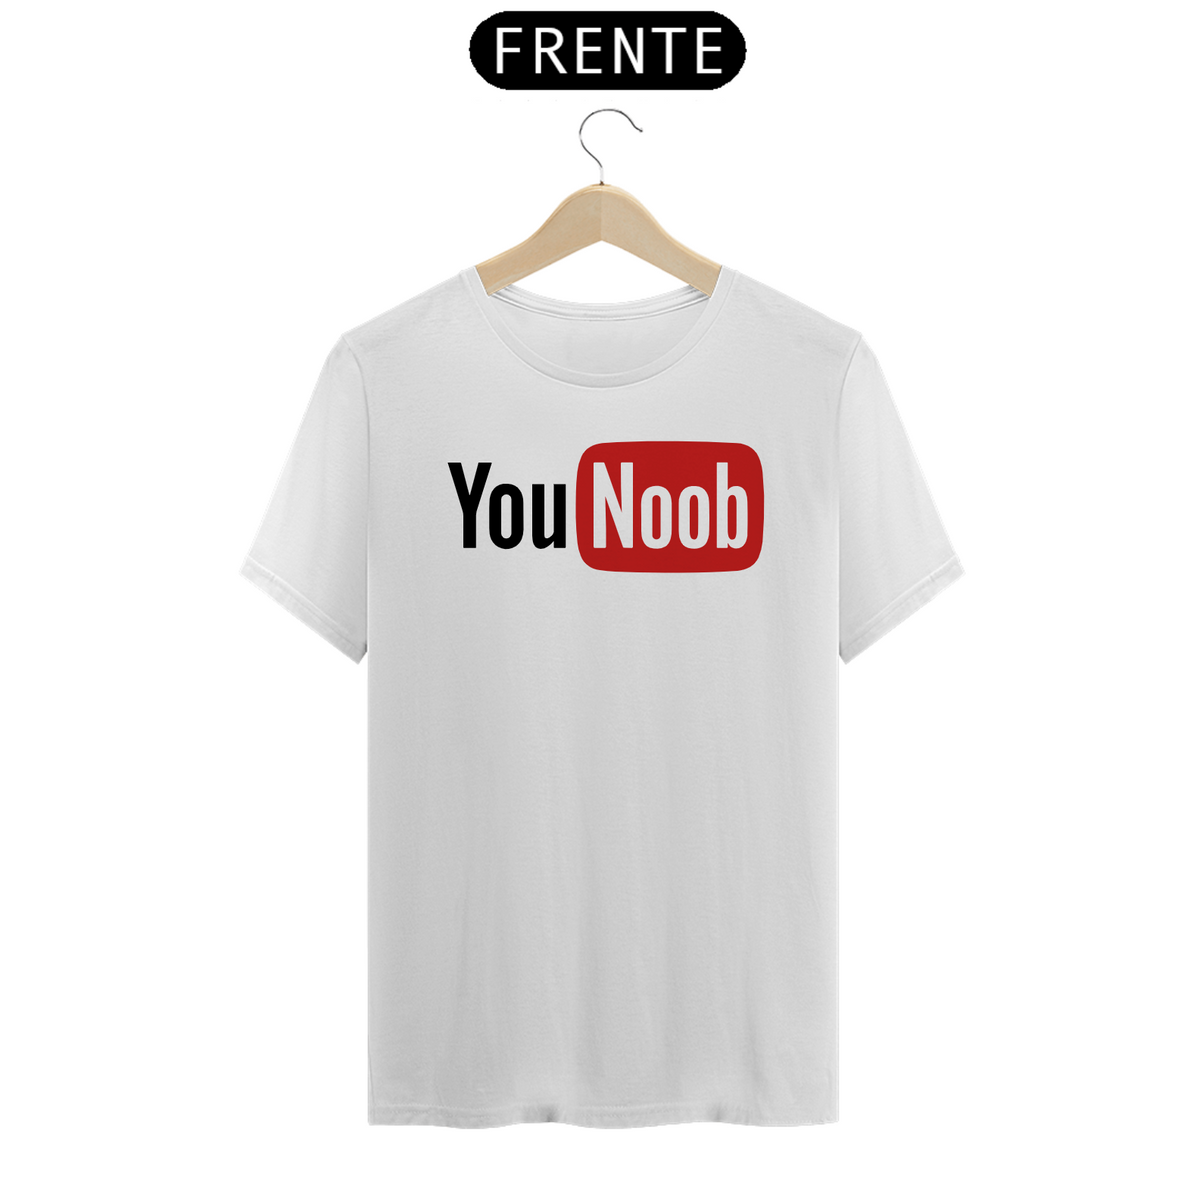 Nome do produto: YOU NOOB - Camiseta Personalizada com Estampa Geek